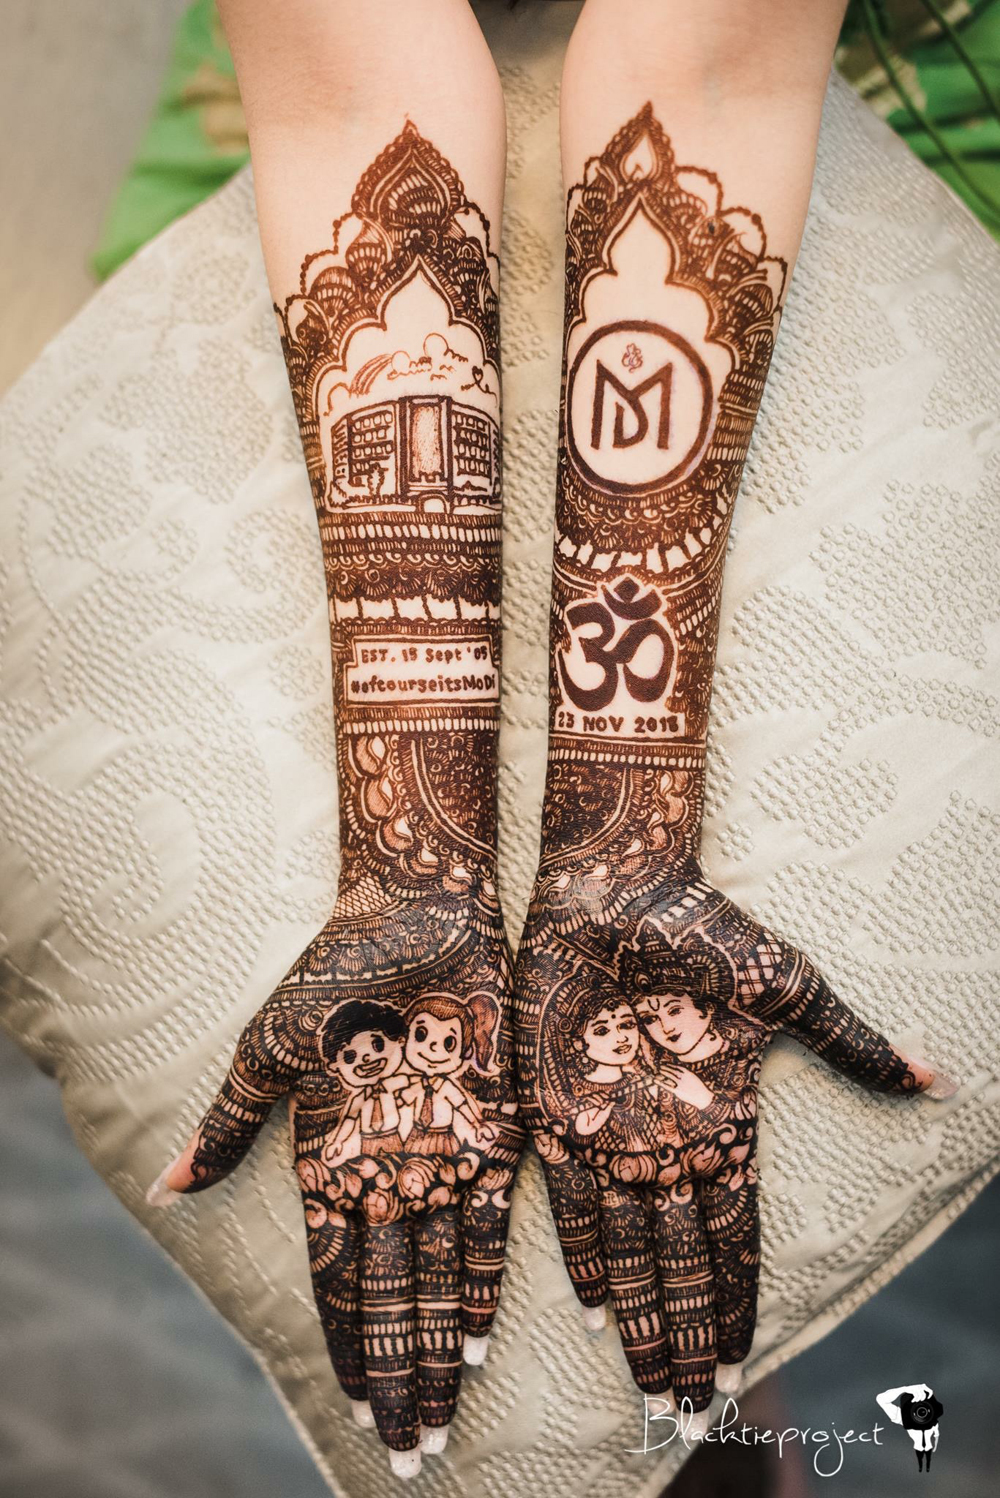 Best Bridal Mehndi Artists in All Cities | WeddingSutra Favorites